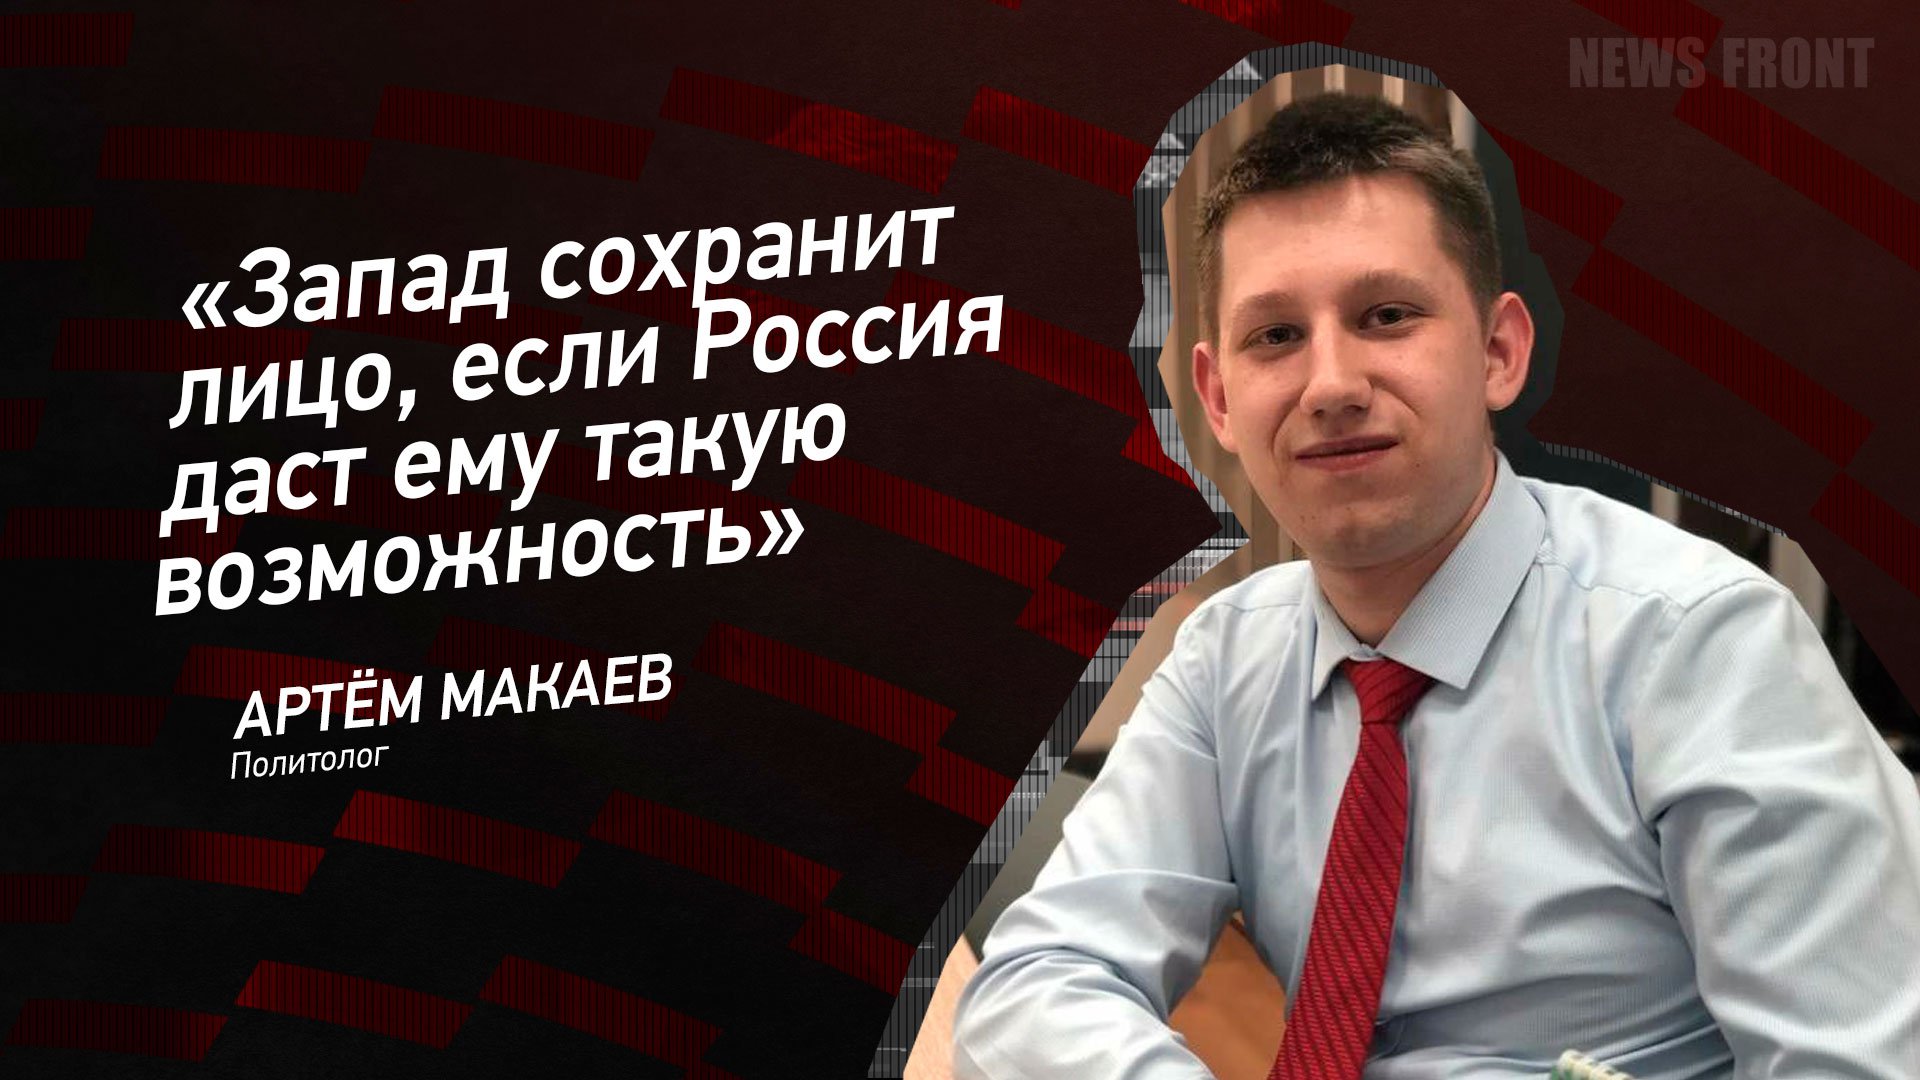 "Запад сохранит лицо, если Россия даст ему такую возможность" - Артем Макаев